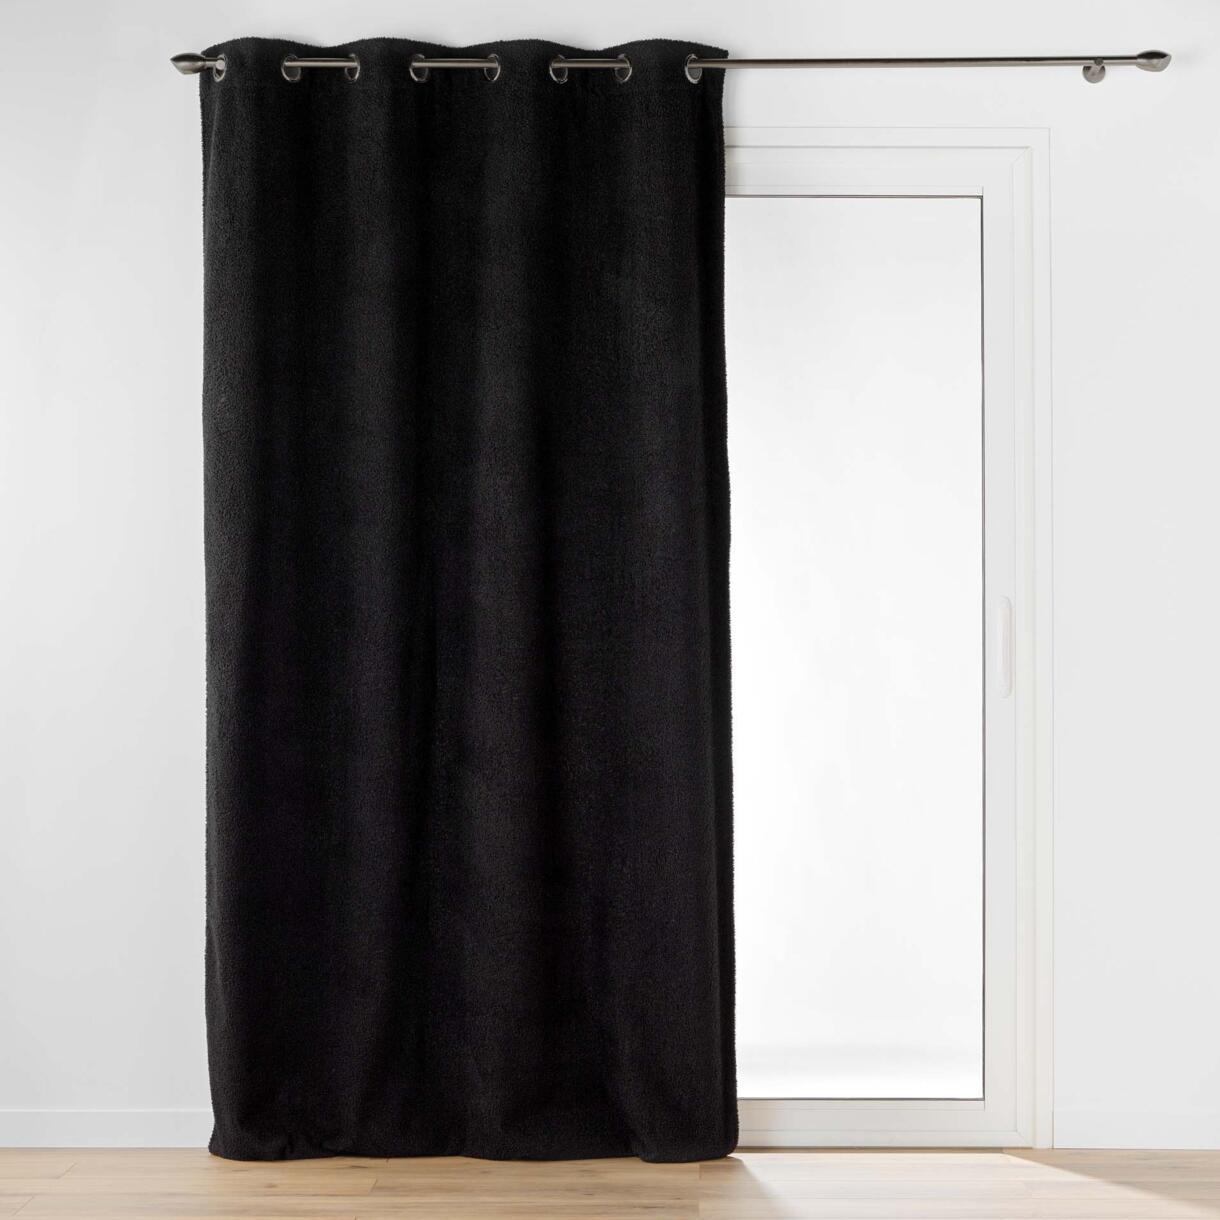 Cortina con rizos (140 x 240 cm) Woly Negro